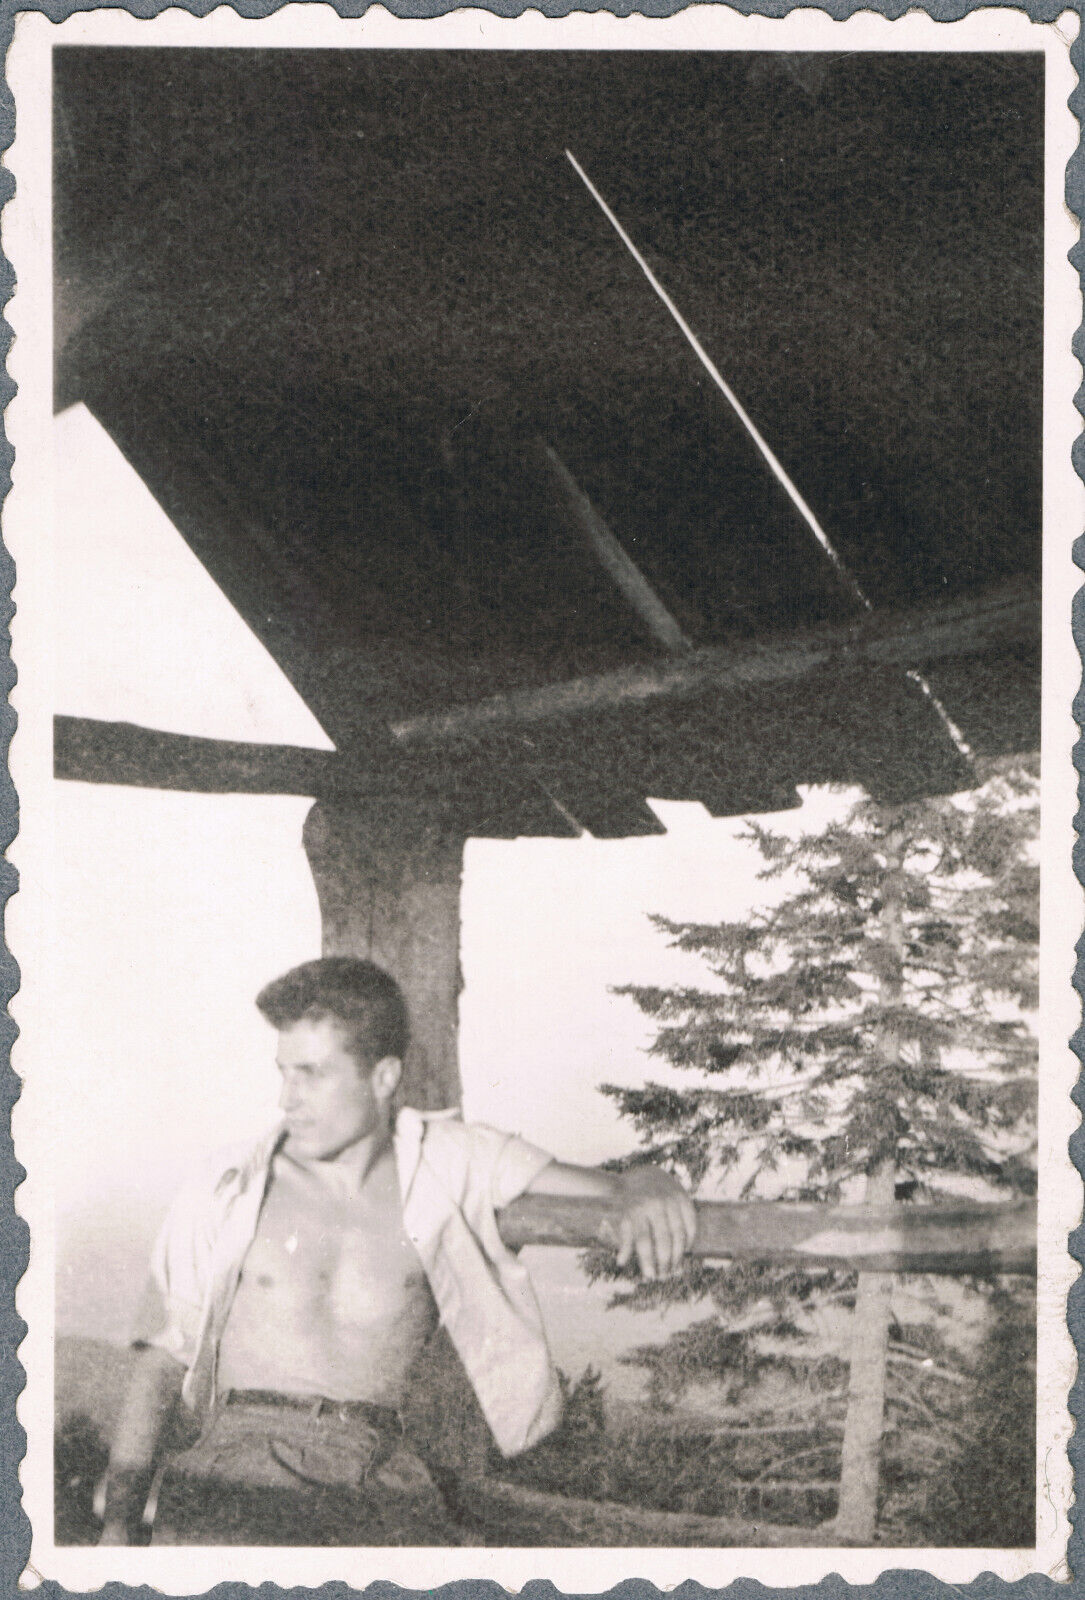 Beefcake Bulge Shirtless Man Trunks Gay Interest Vintage Snapshot Photo